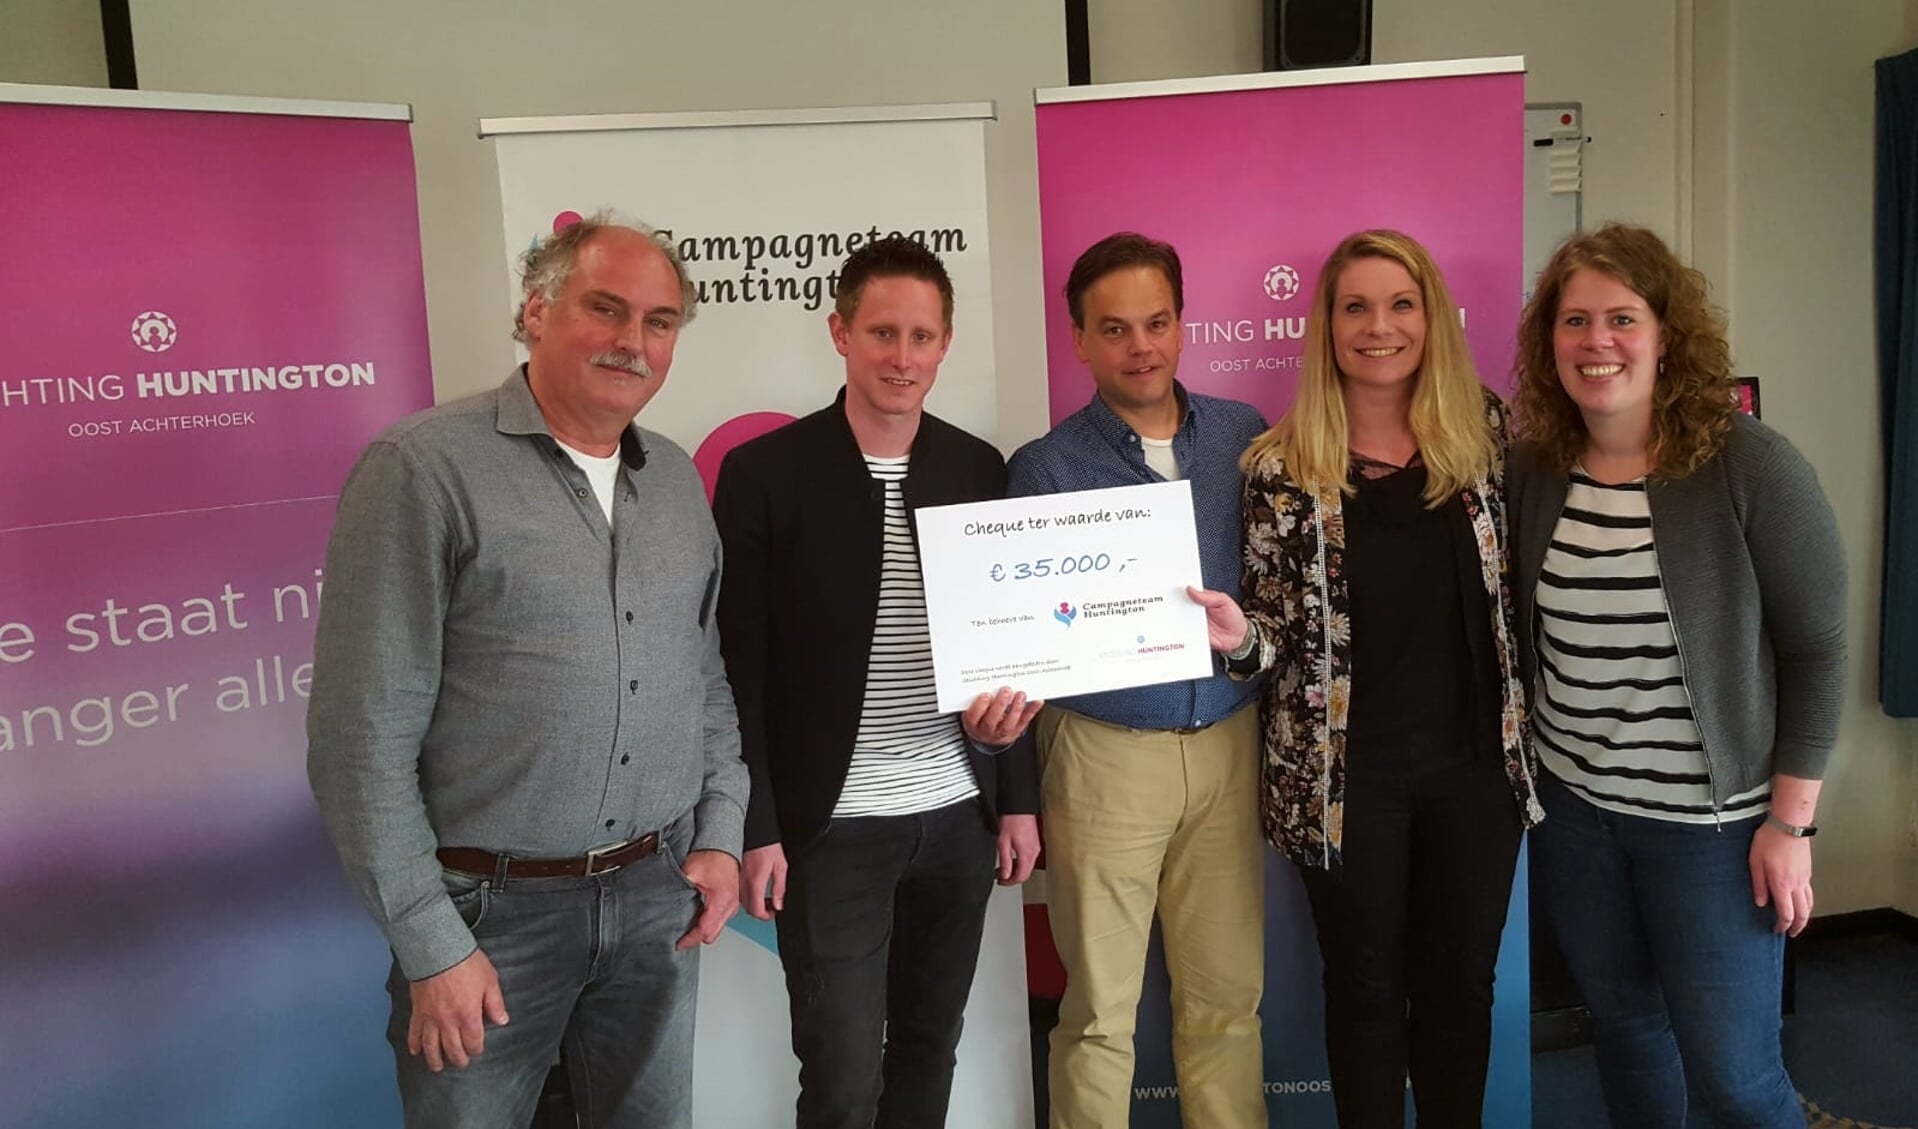 Vertegenwoordigers van Stichting Huntington Oost Achterhoek en Campagneteam Huntington, met in het midden Lars Krabbenborg en Eric Reits (met cheque). Foto: PR